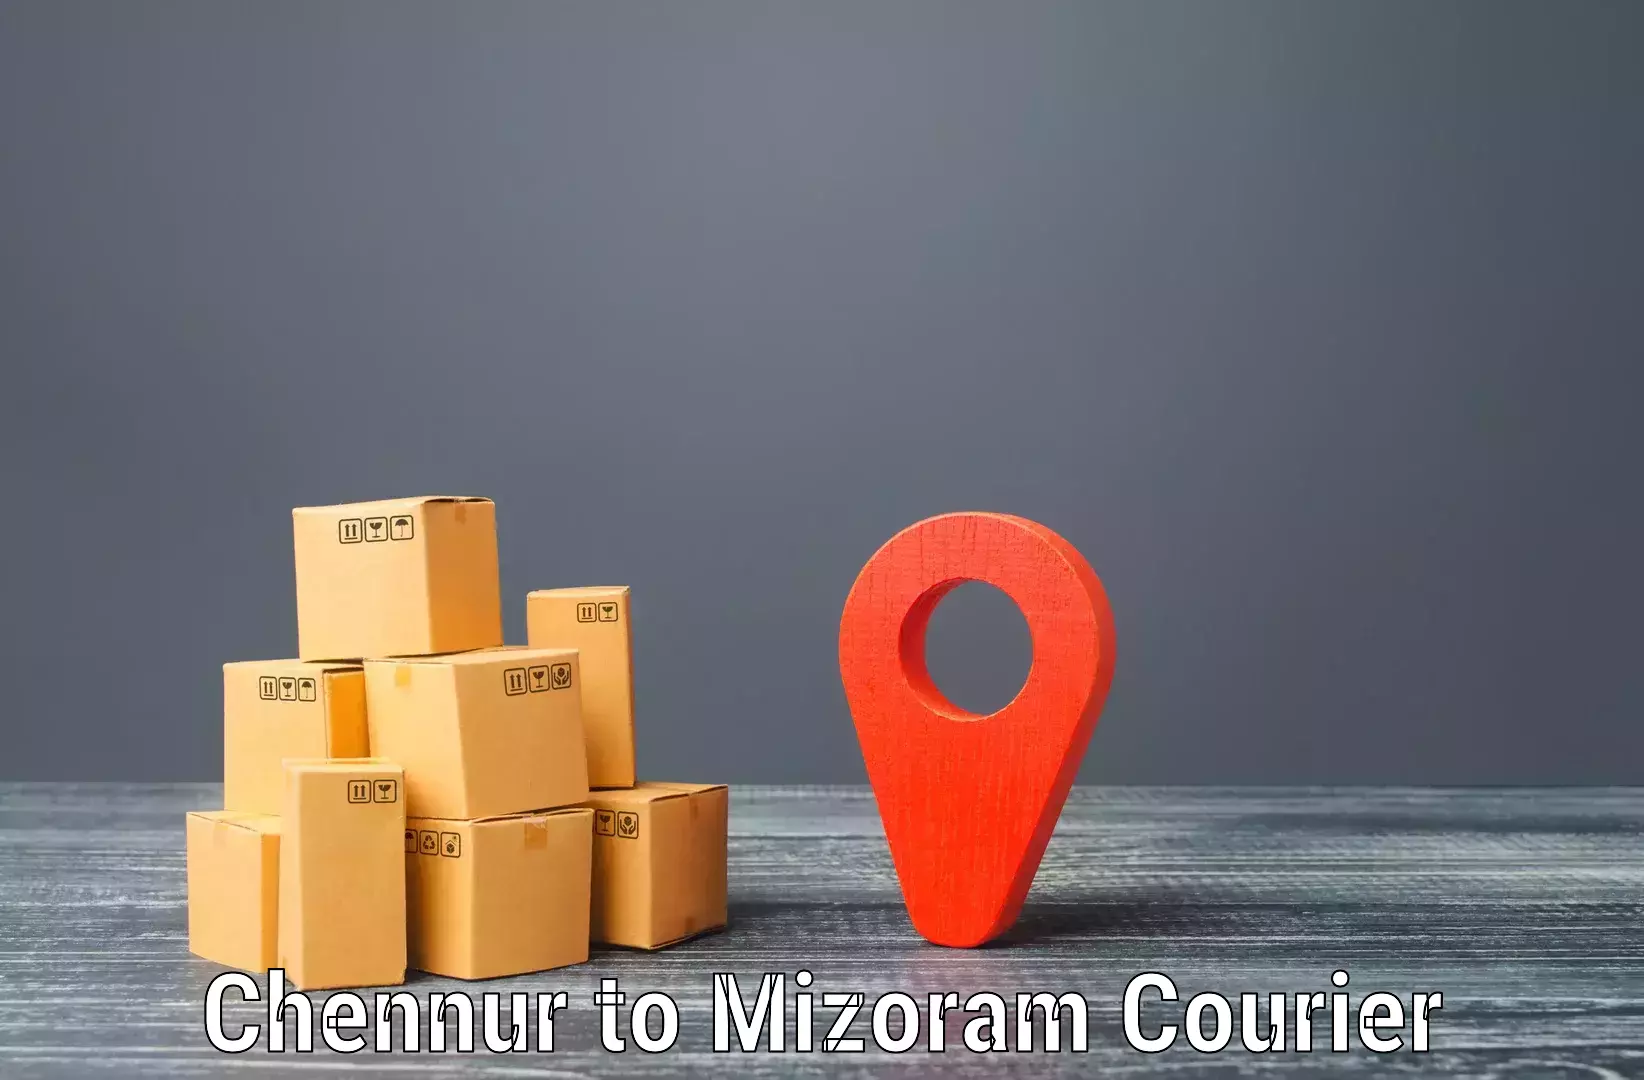 Urban courier service Chennur to Aizawl